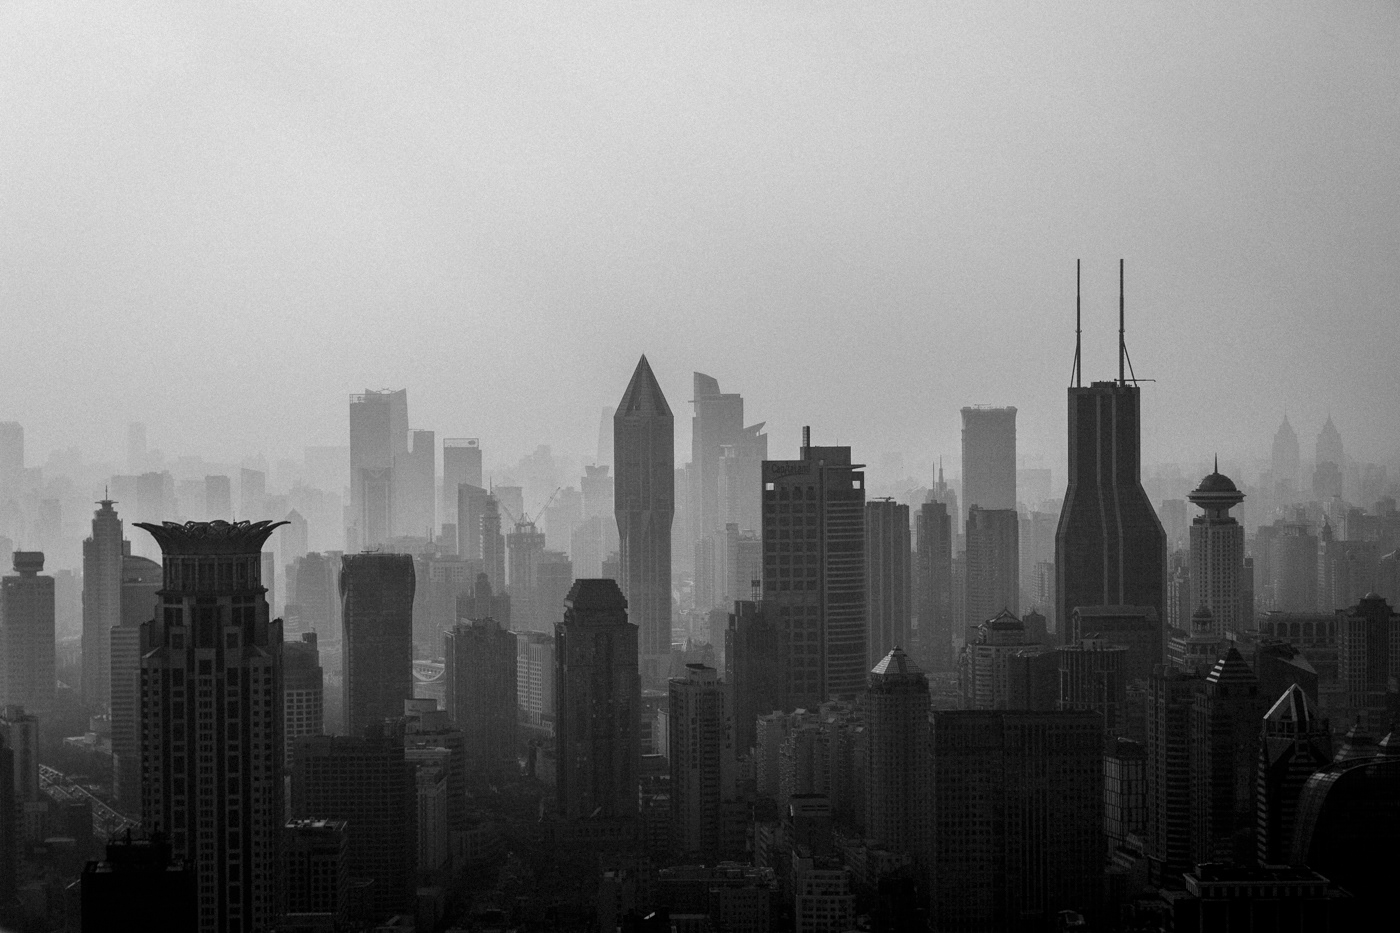 Air Pollution climate contamination matt mawson pollution shanghai smog pudong The Bund